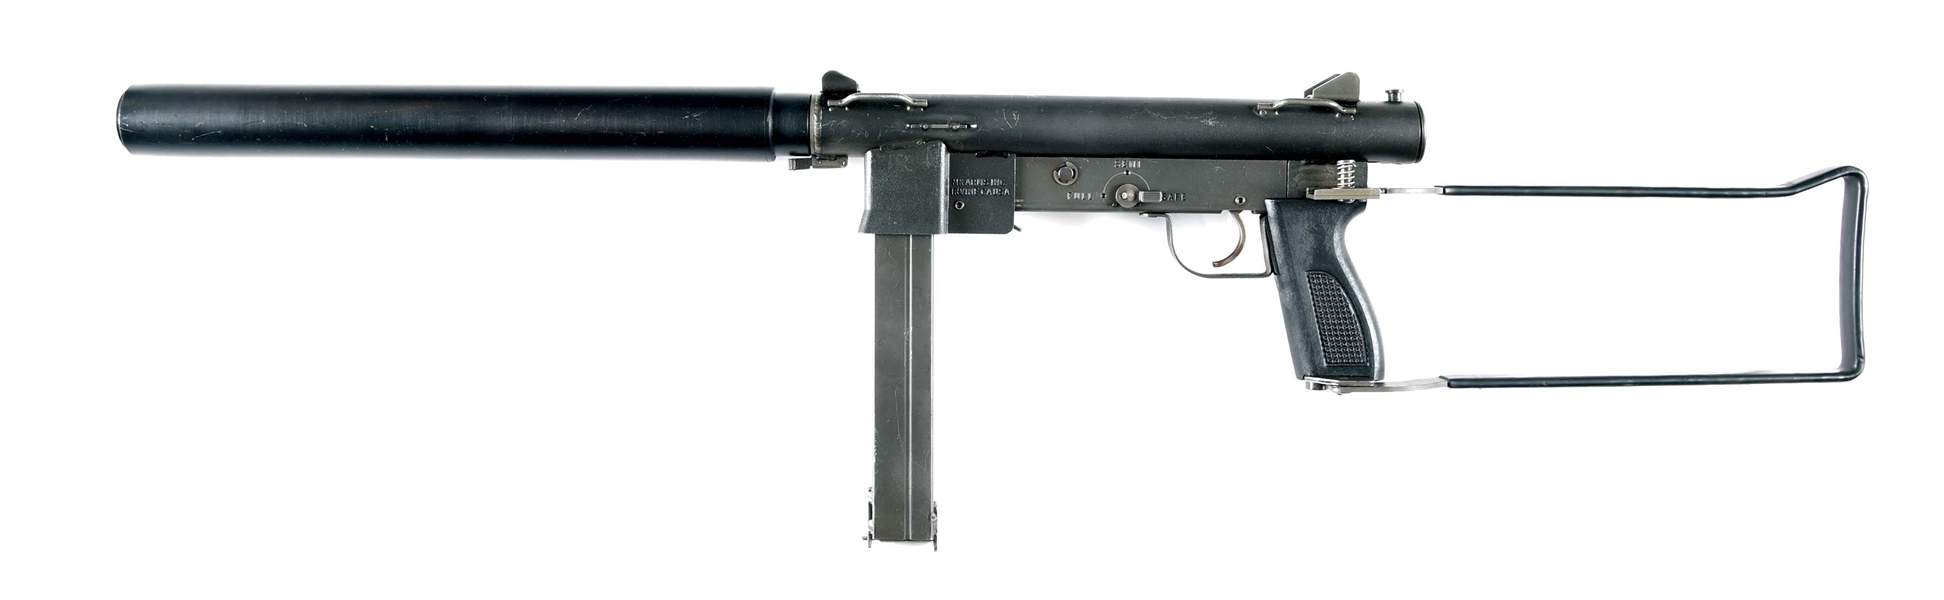 (N) MK ARMS MODEL MK 760 MACHINE GUN WITH BLAYLOCK GUN WORKS AR-9 SUPPRESSOR (FULLY TRANSFERABLE).